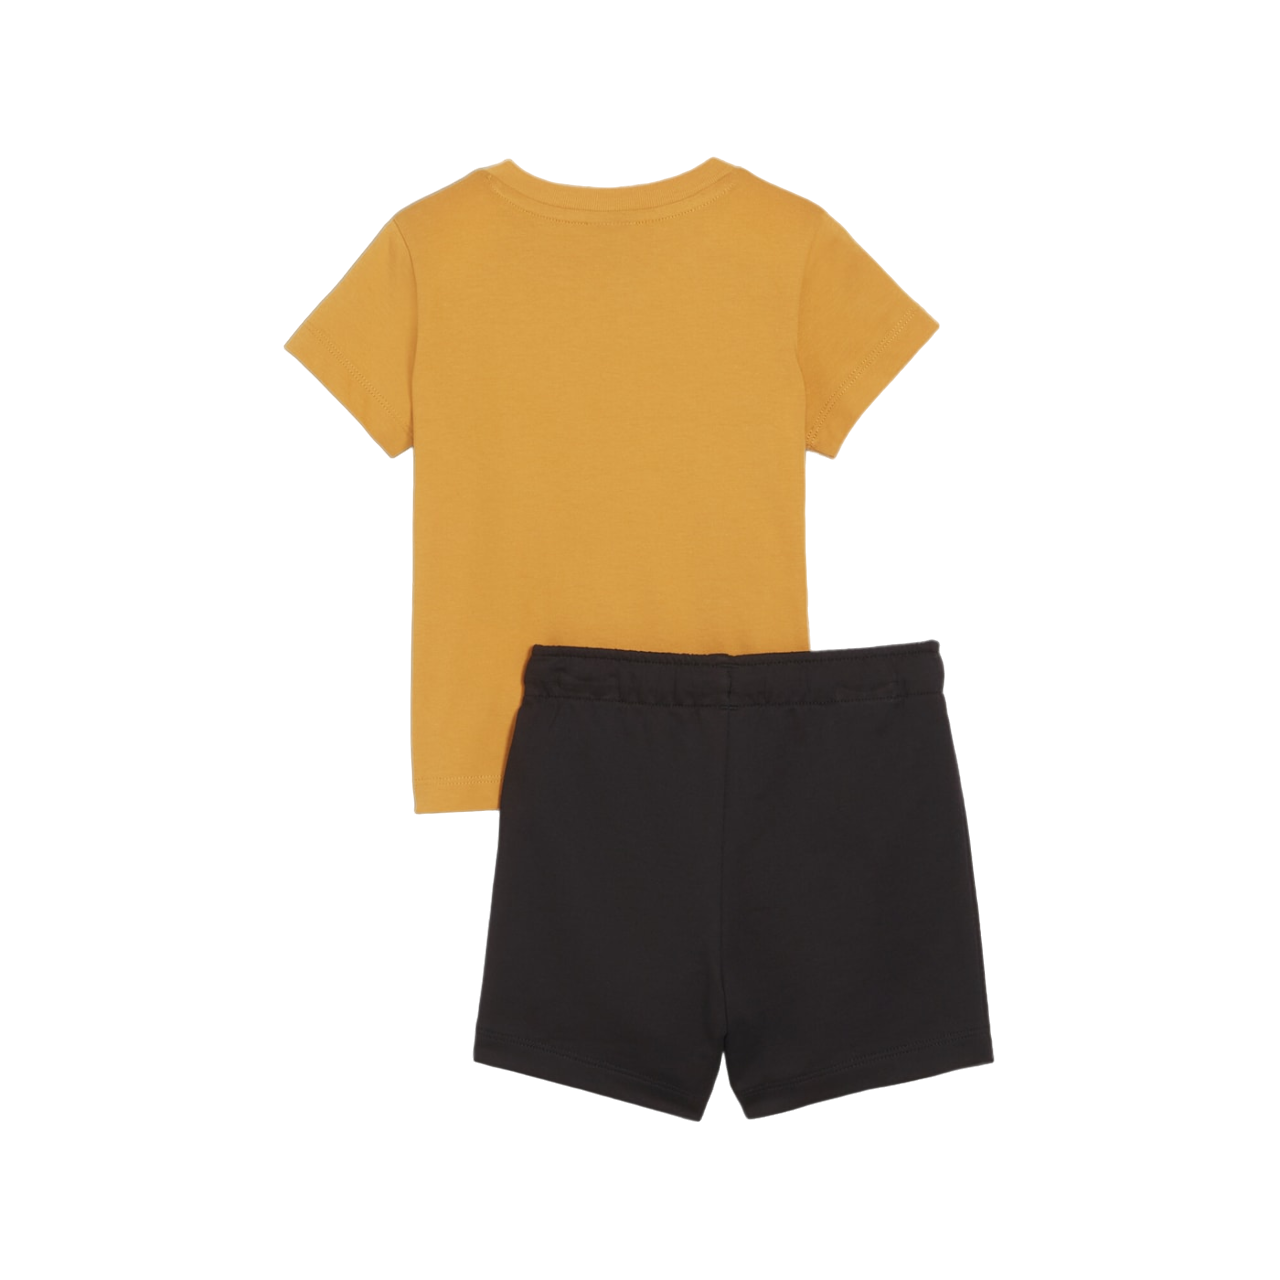 Puma children&#39;s t-shirt and shorts set Minicats 845839-91 ocher yellow